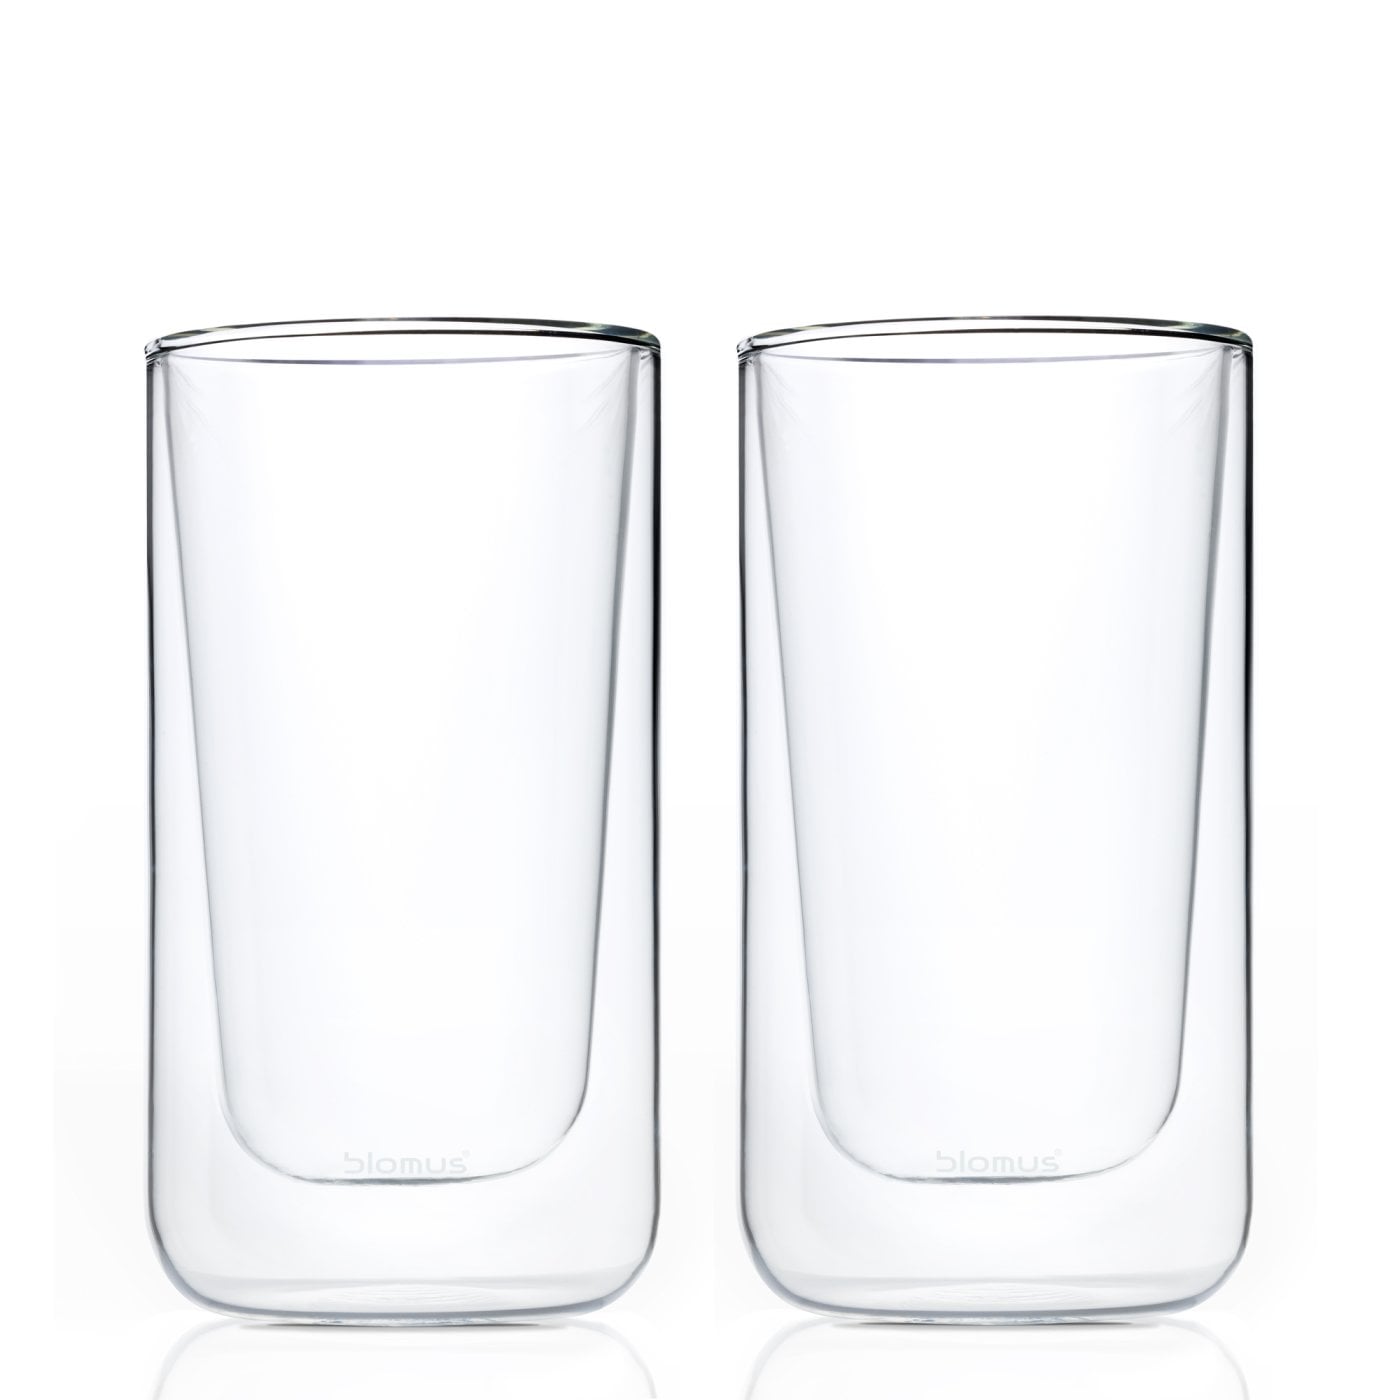 NERO 2 pc  Latte Macchiato Glass set 11 oz / 320 ml